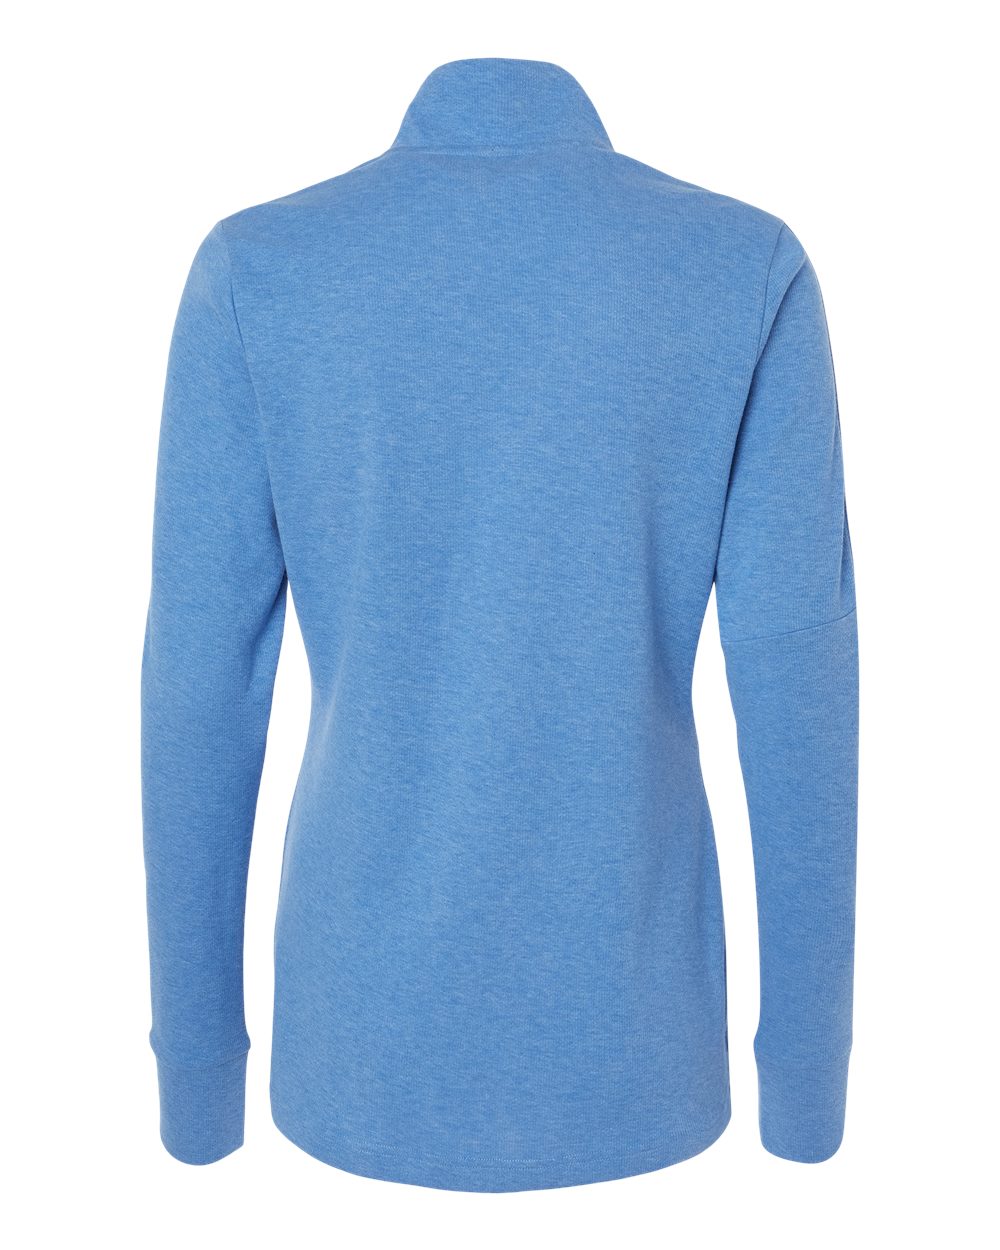 Adidas A555 Women's 3-Stripes Quarter-Zip Sweater #color_Focus Blue Melange